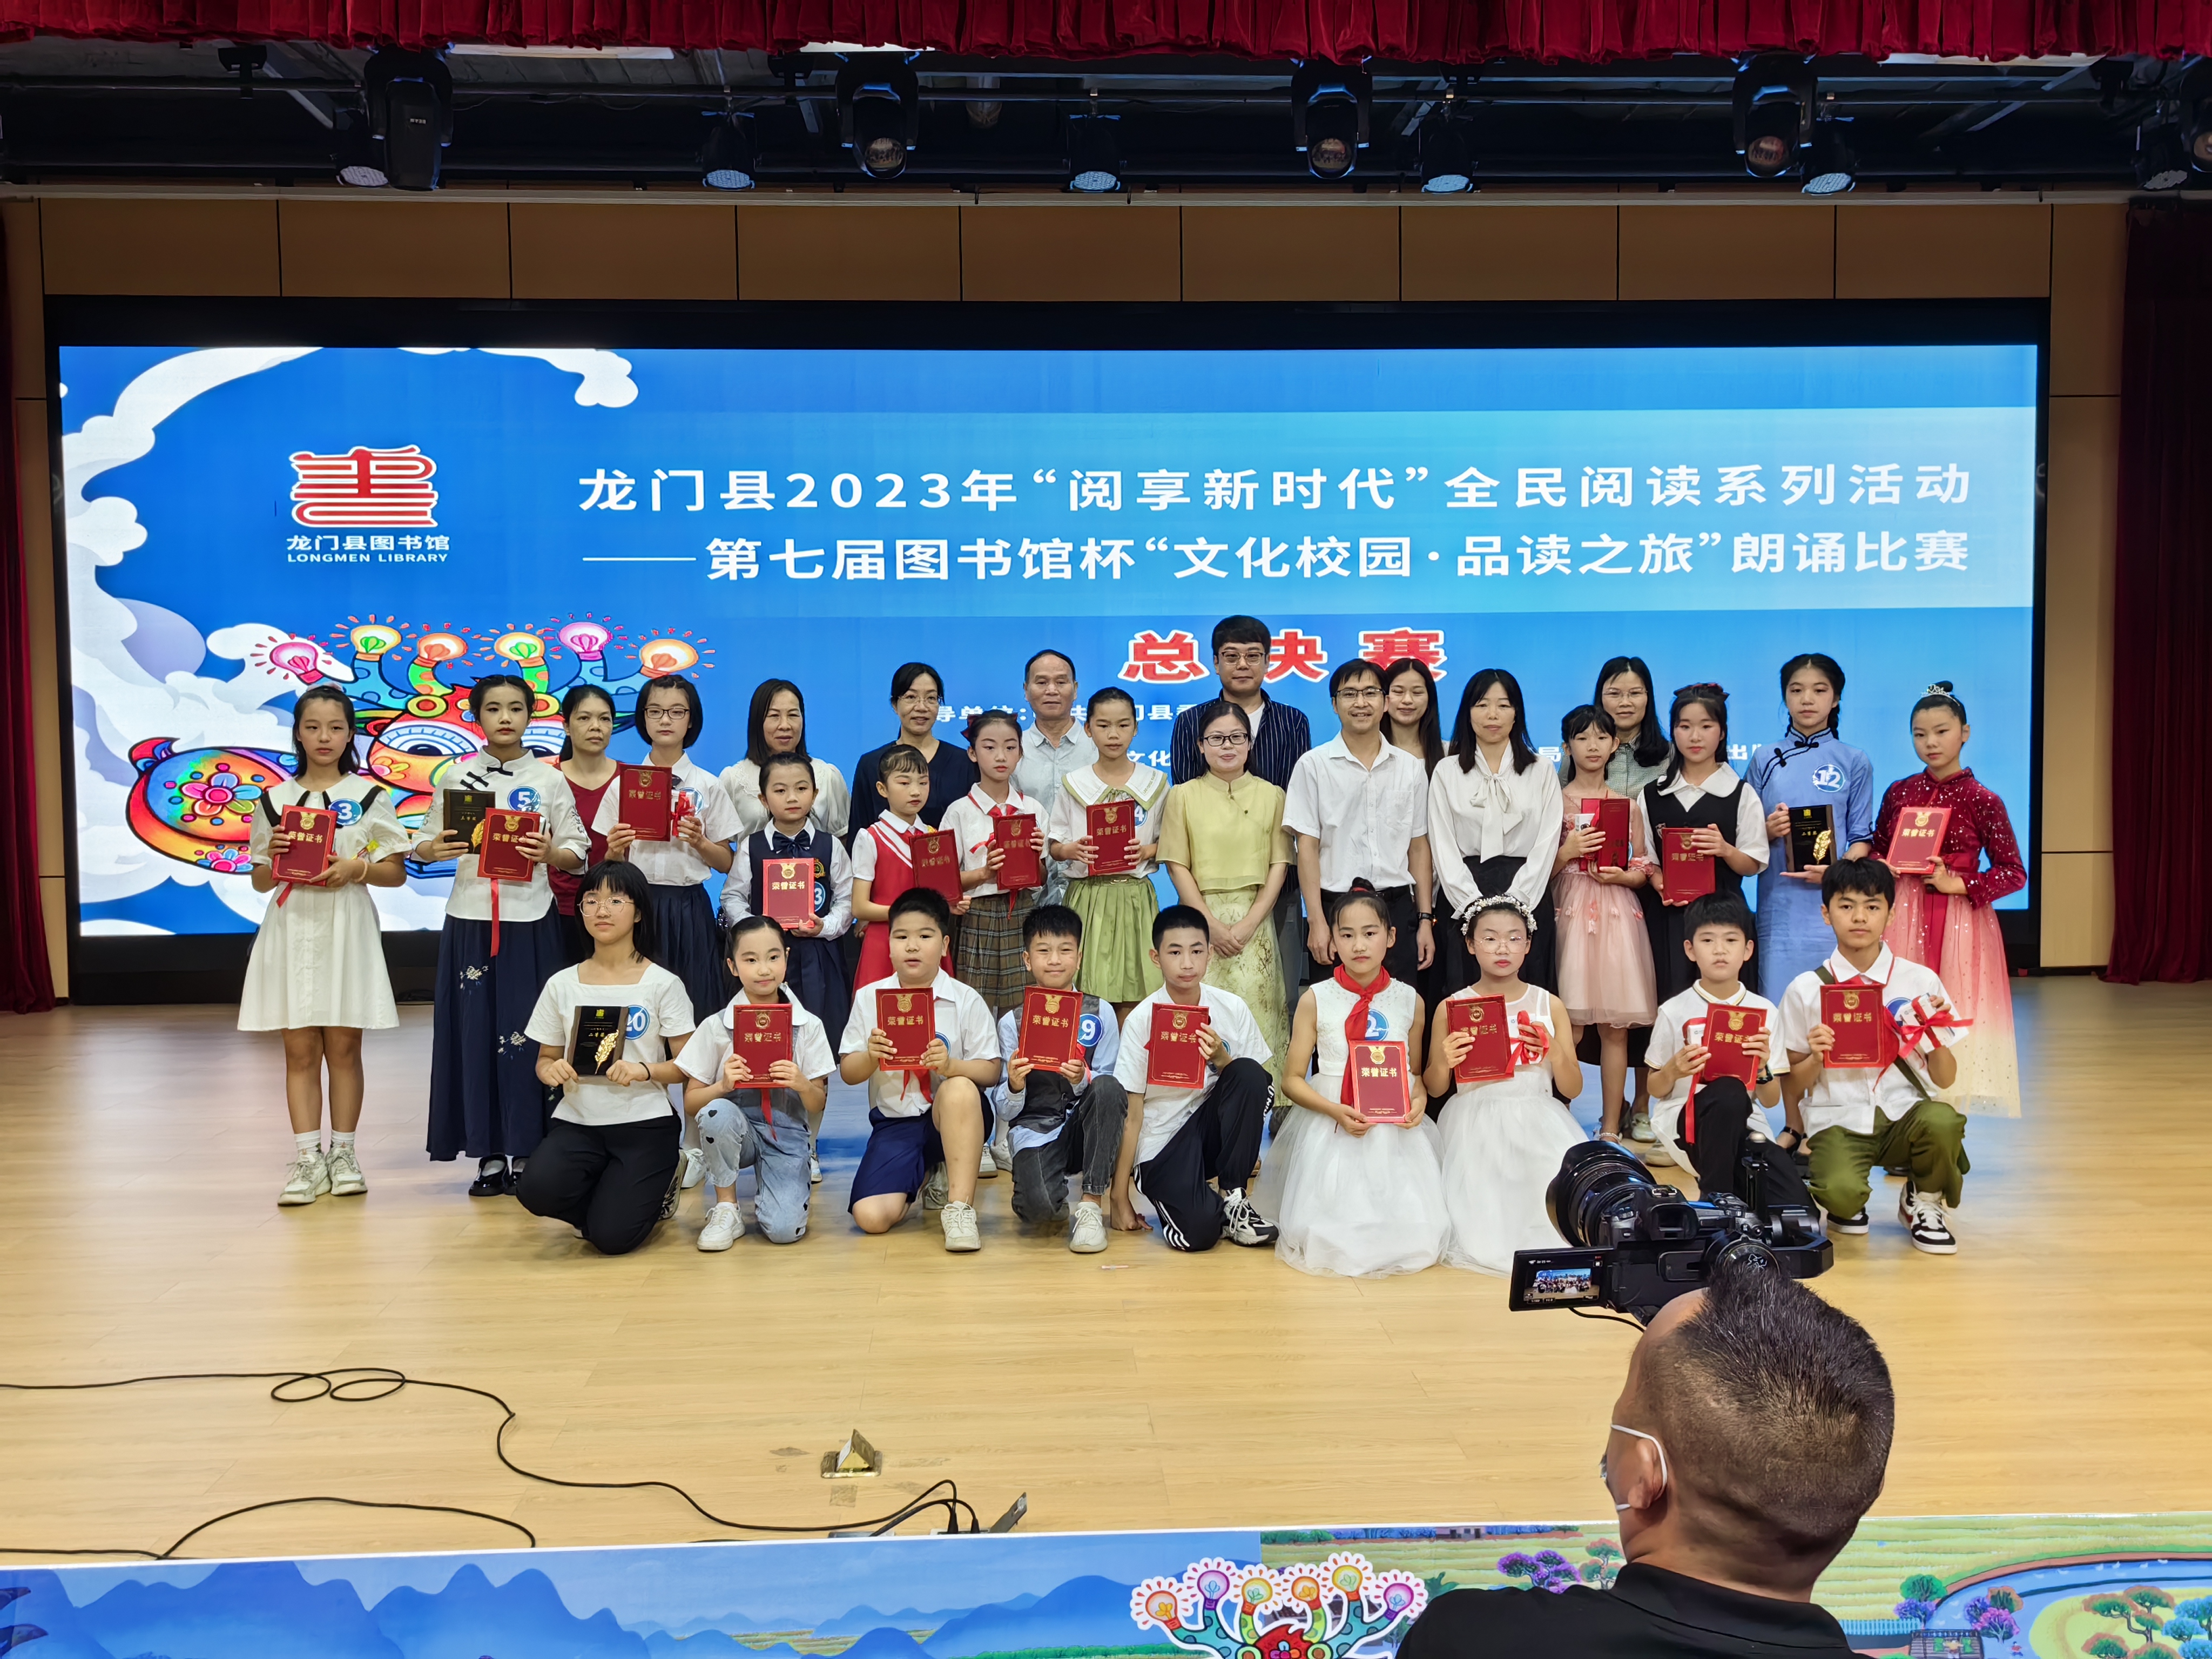 龙门县第七届图书馆杯“文化校园·品读之旅”朗诵比赛决赛圆满成功